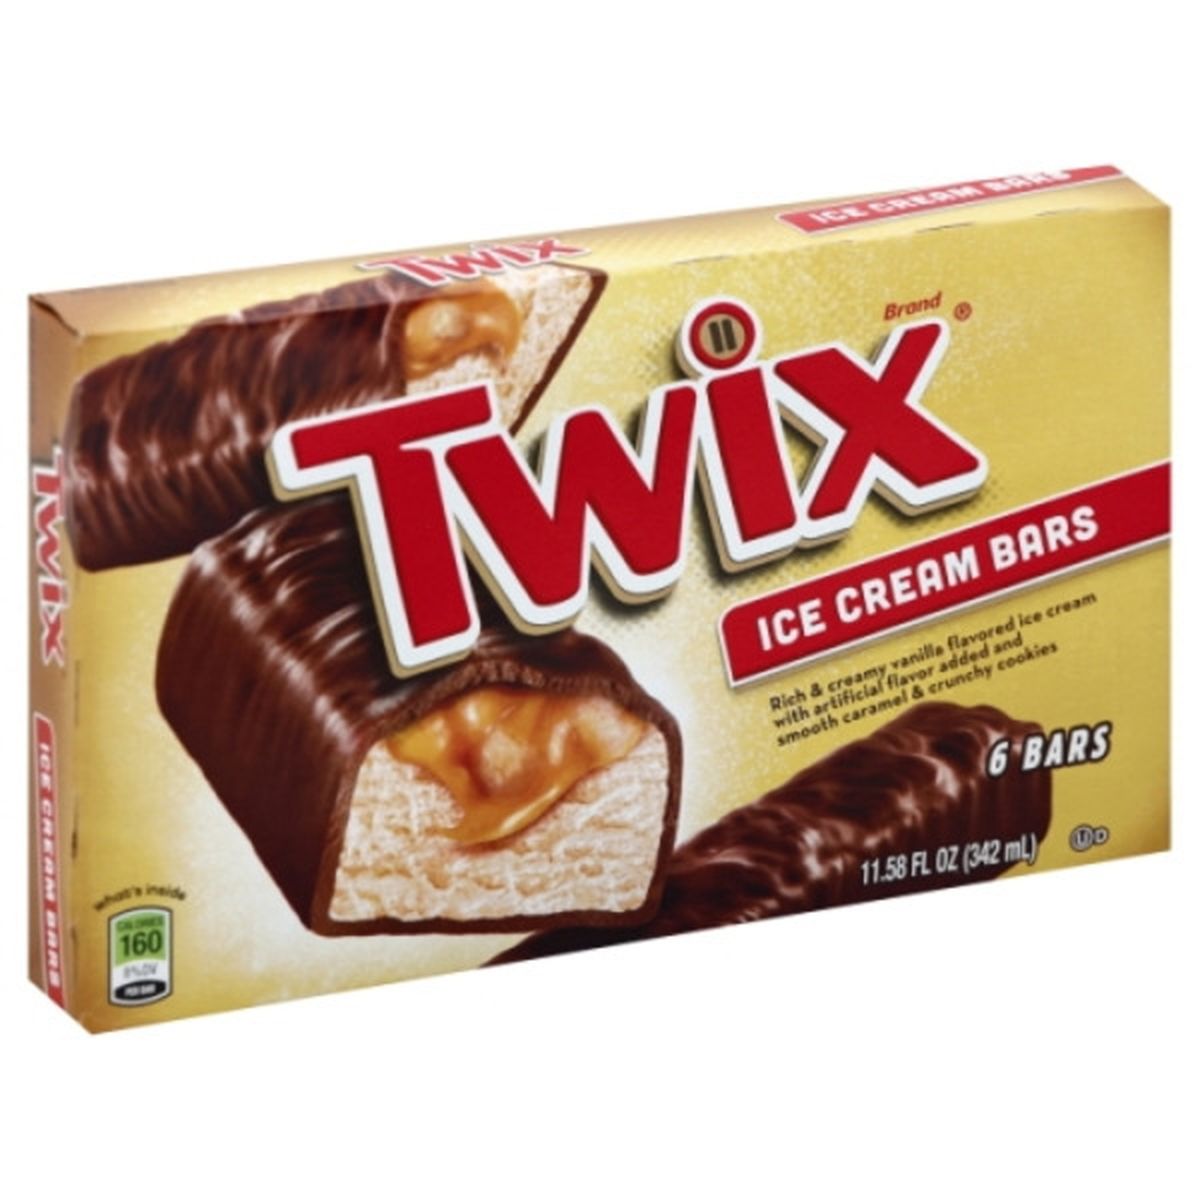 Calories in TWIX Ice Cream Bars